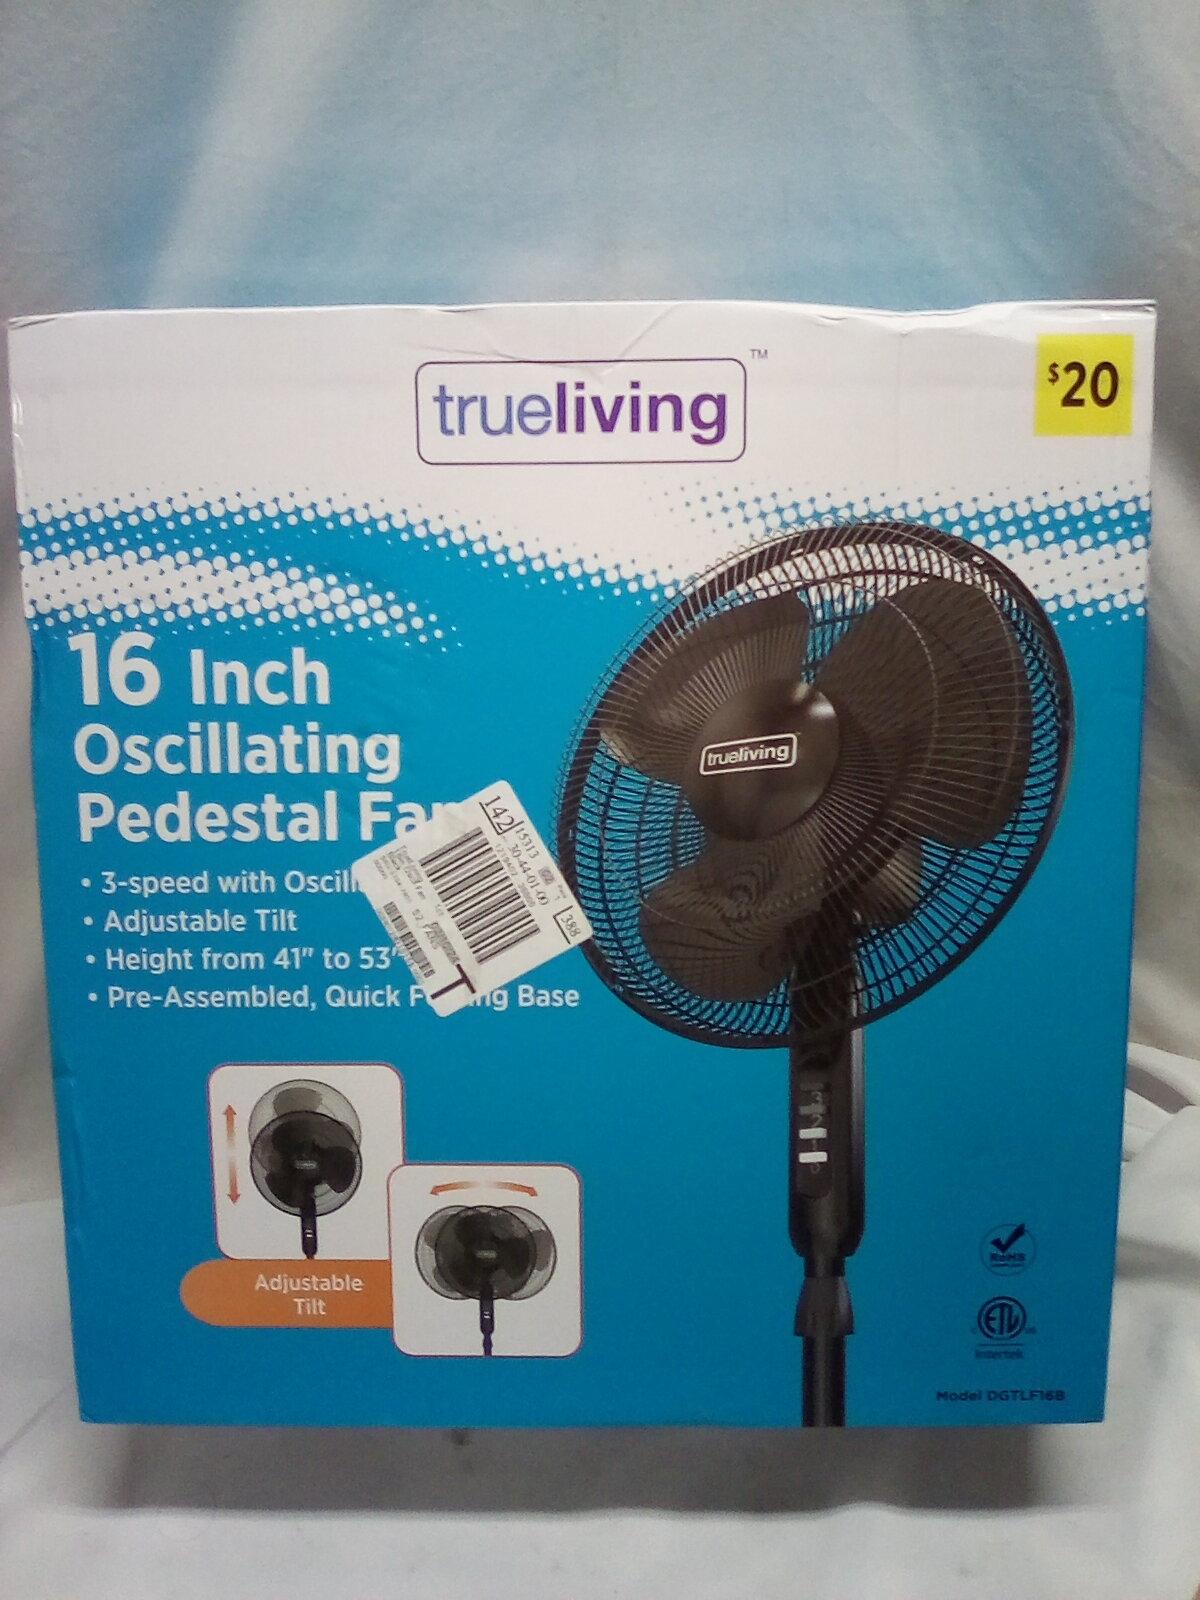 True Living 16” Oscillating Pedestal Fan.